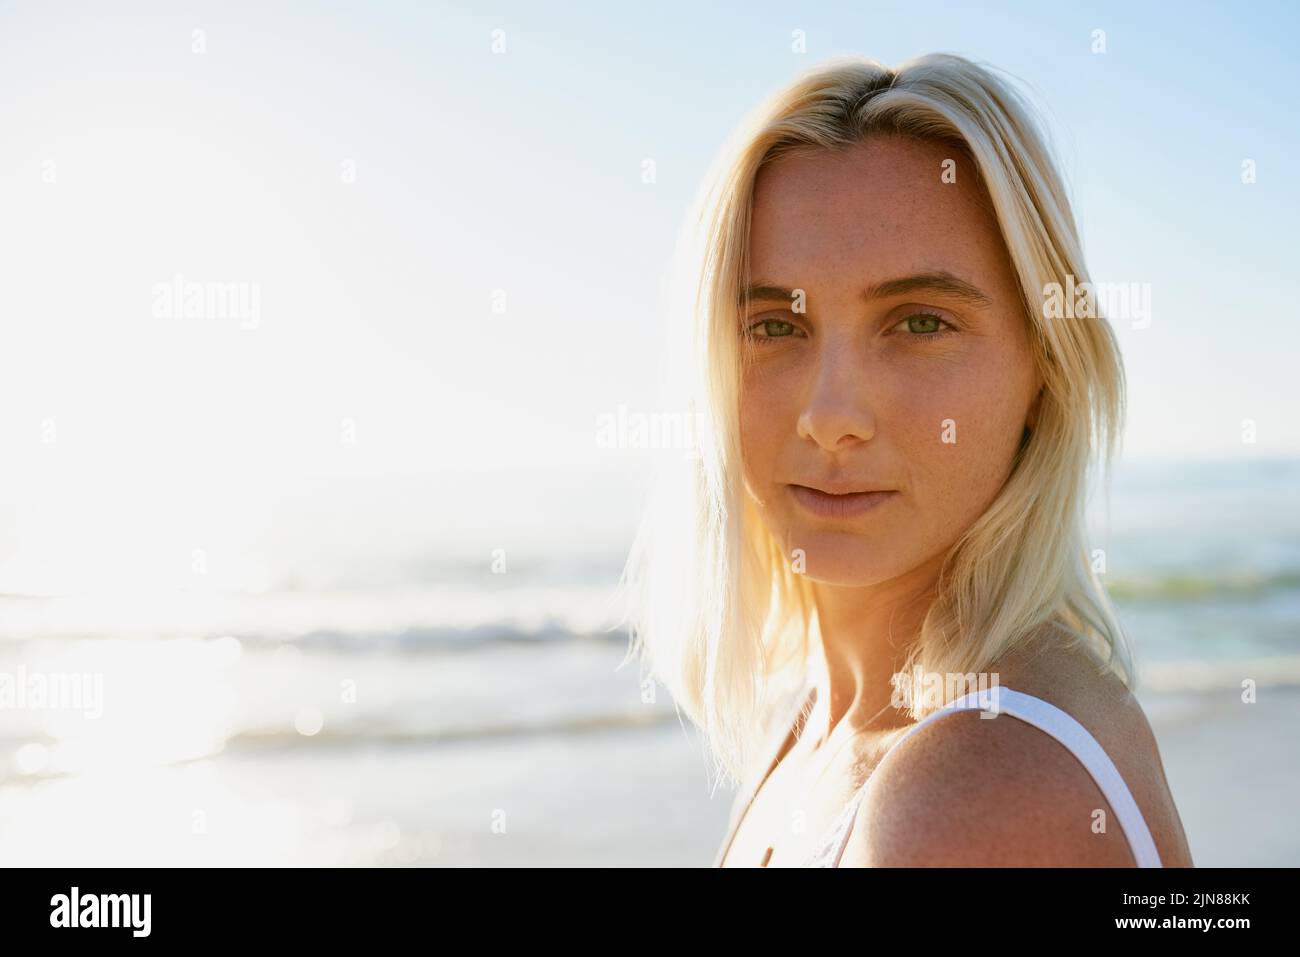 In pace con me. Ritratto corto di una giovane donna attraente che guarda sopra la sua spalla sulla spiaggia con l'oceano dietro di lei. Foto Stock